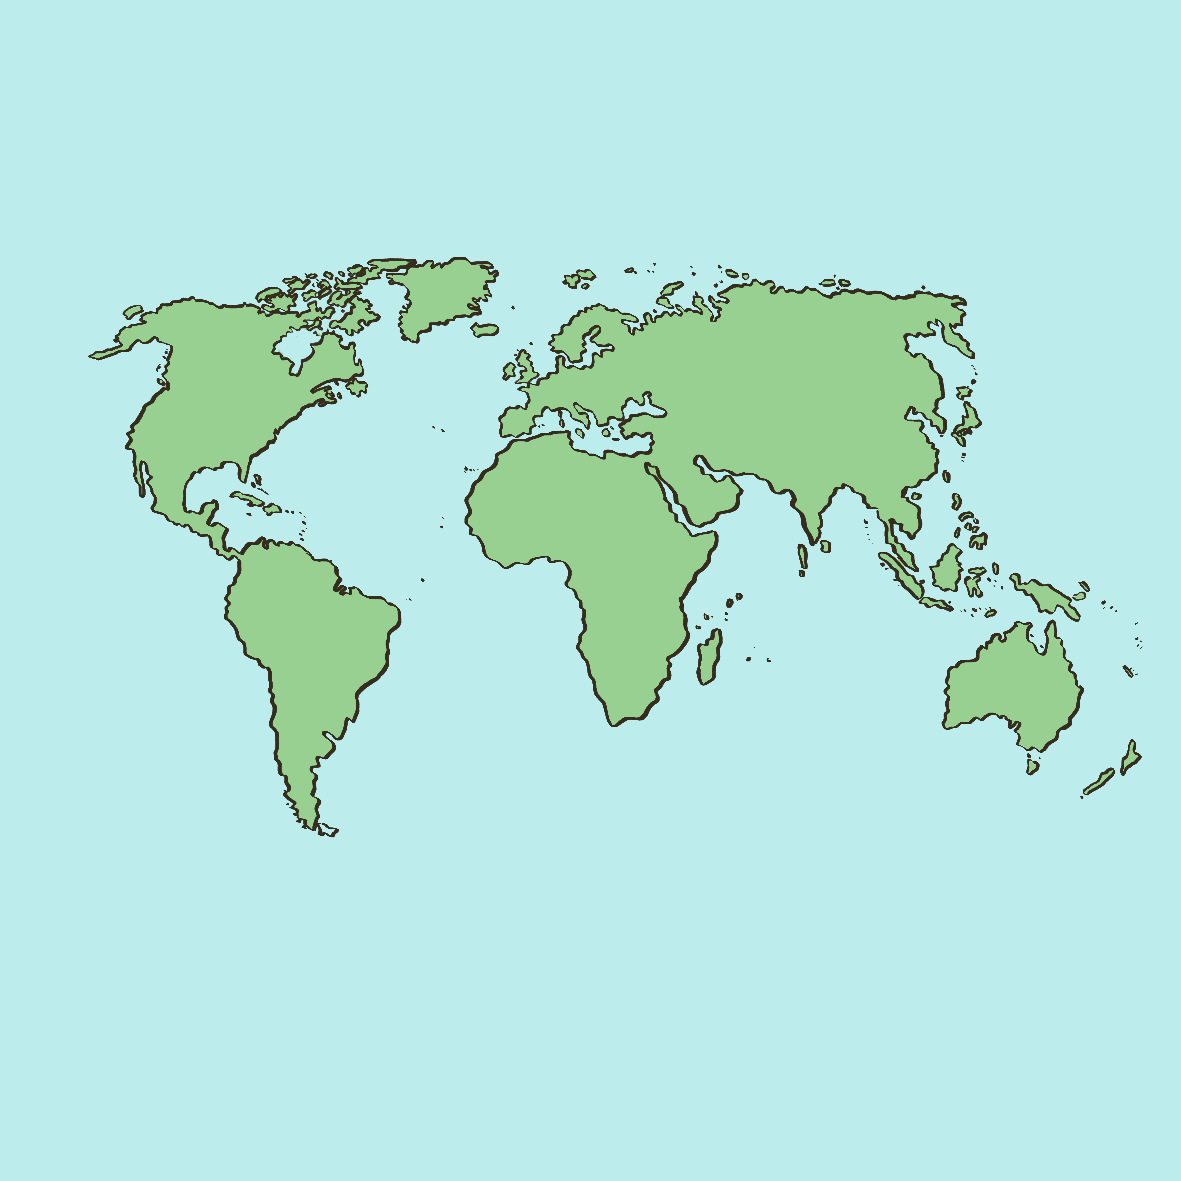 Eine blaue Karte mit den Umrissen der Kontinente. Die Kontinente sind grün eingefärbt. 